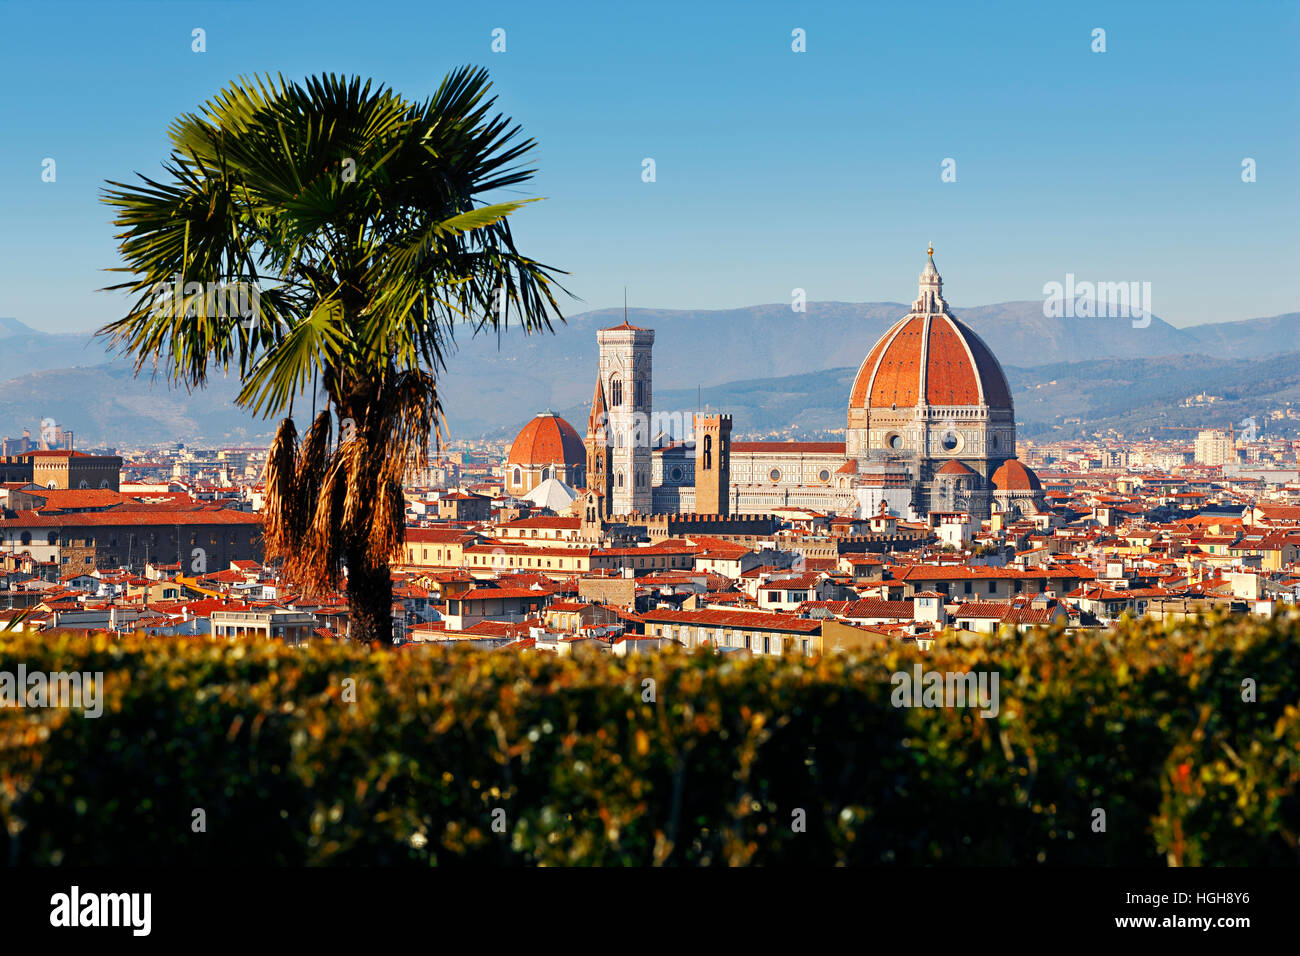 Florencia, la Cattedrale di Santa Maria del Fiore, en Toscana, Italia Foto de stock